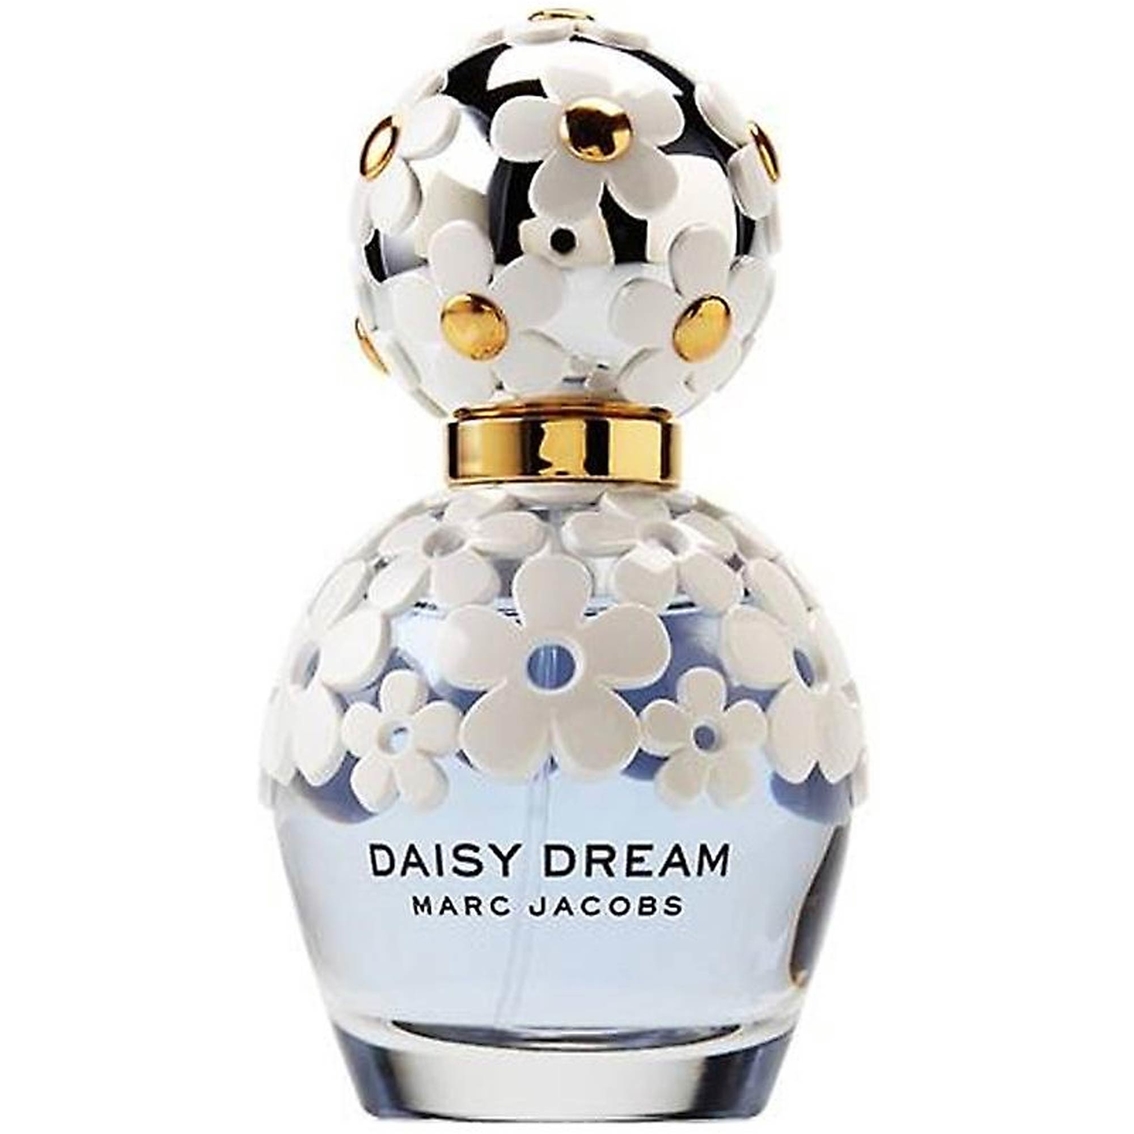 Marc Jacobs Daisy Dream Eau De Toilette | Fragrances | Beauty & Health ...